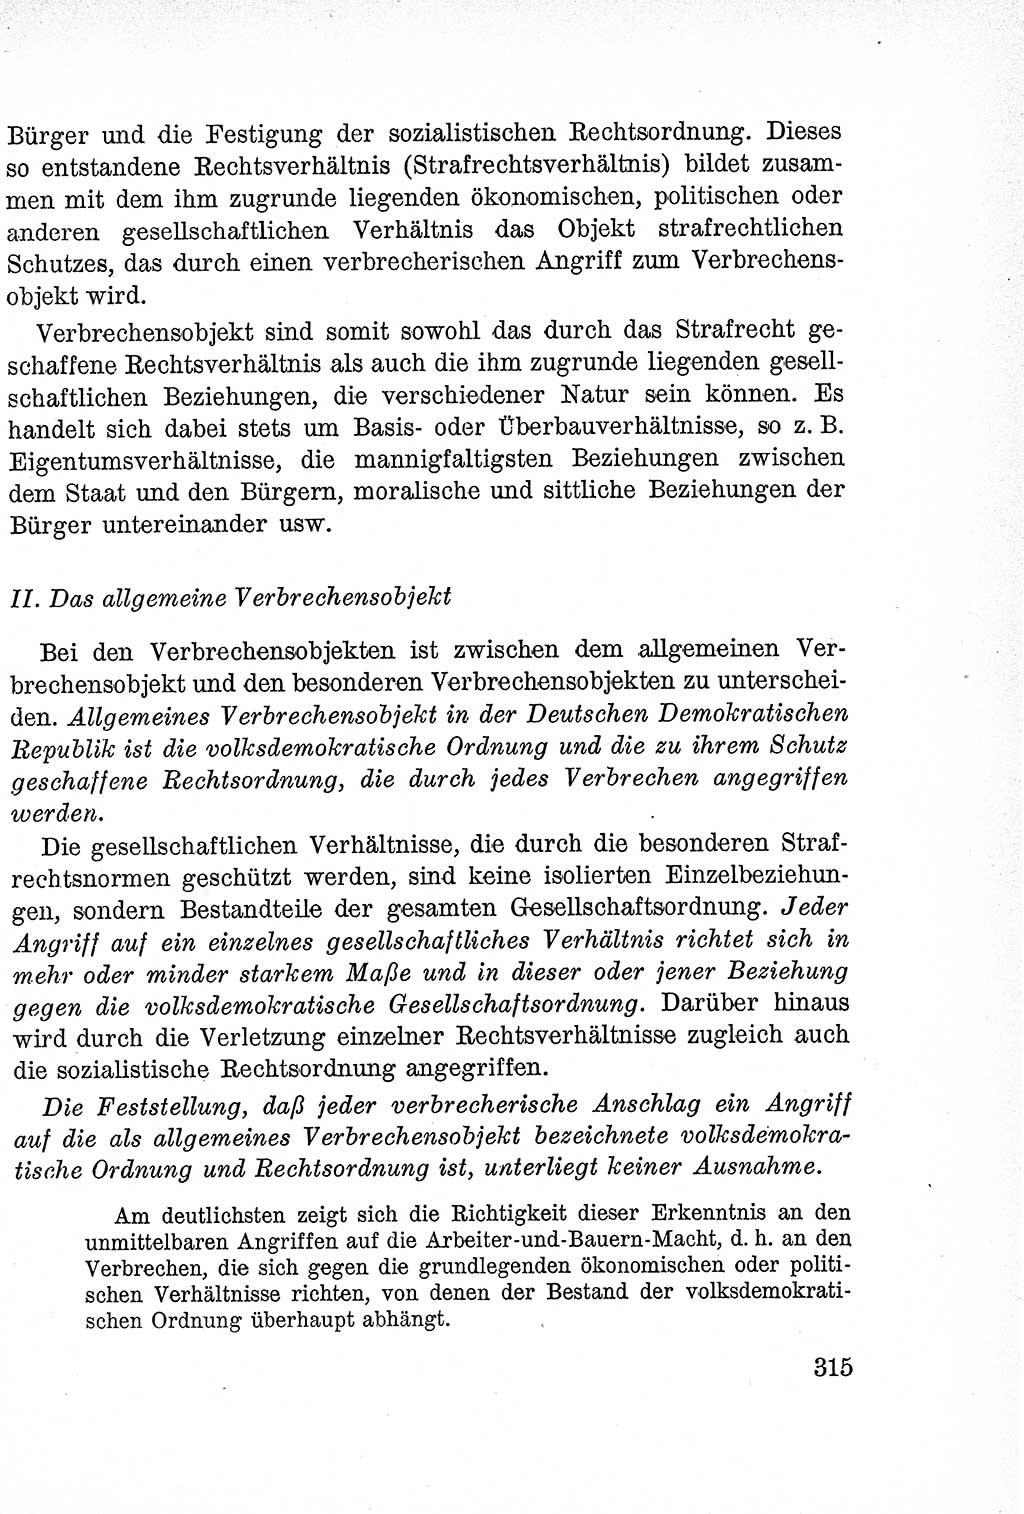 Lehrbuch des Strafrechts der Deutschen Demokratischen Republik (DDR), Allgemeiner Teil 1957, Seite 315 (Lb. Strafr. DDR AT 1957, S. 315)